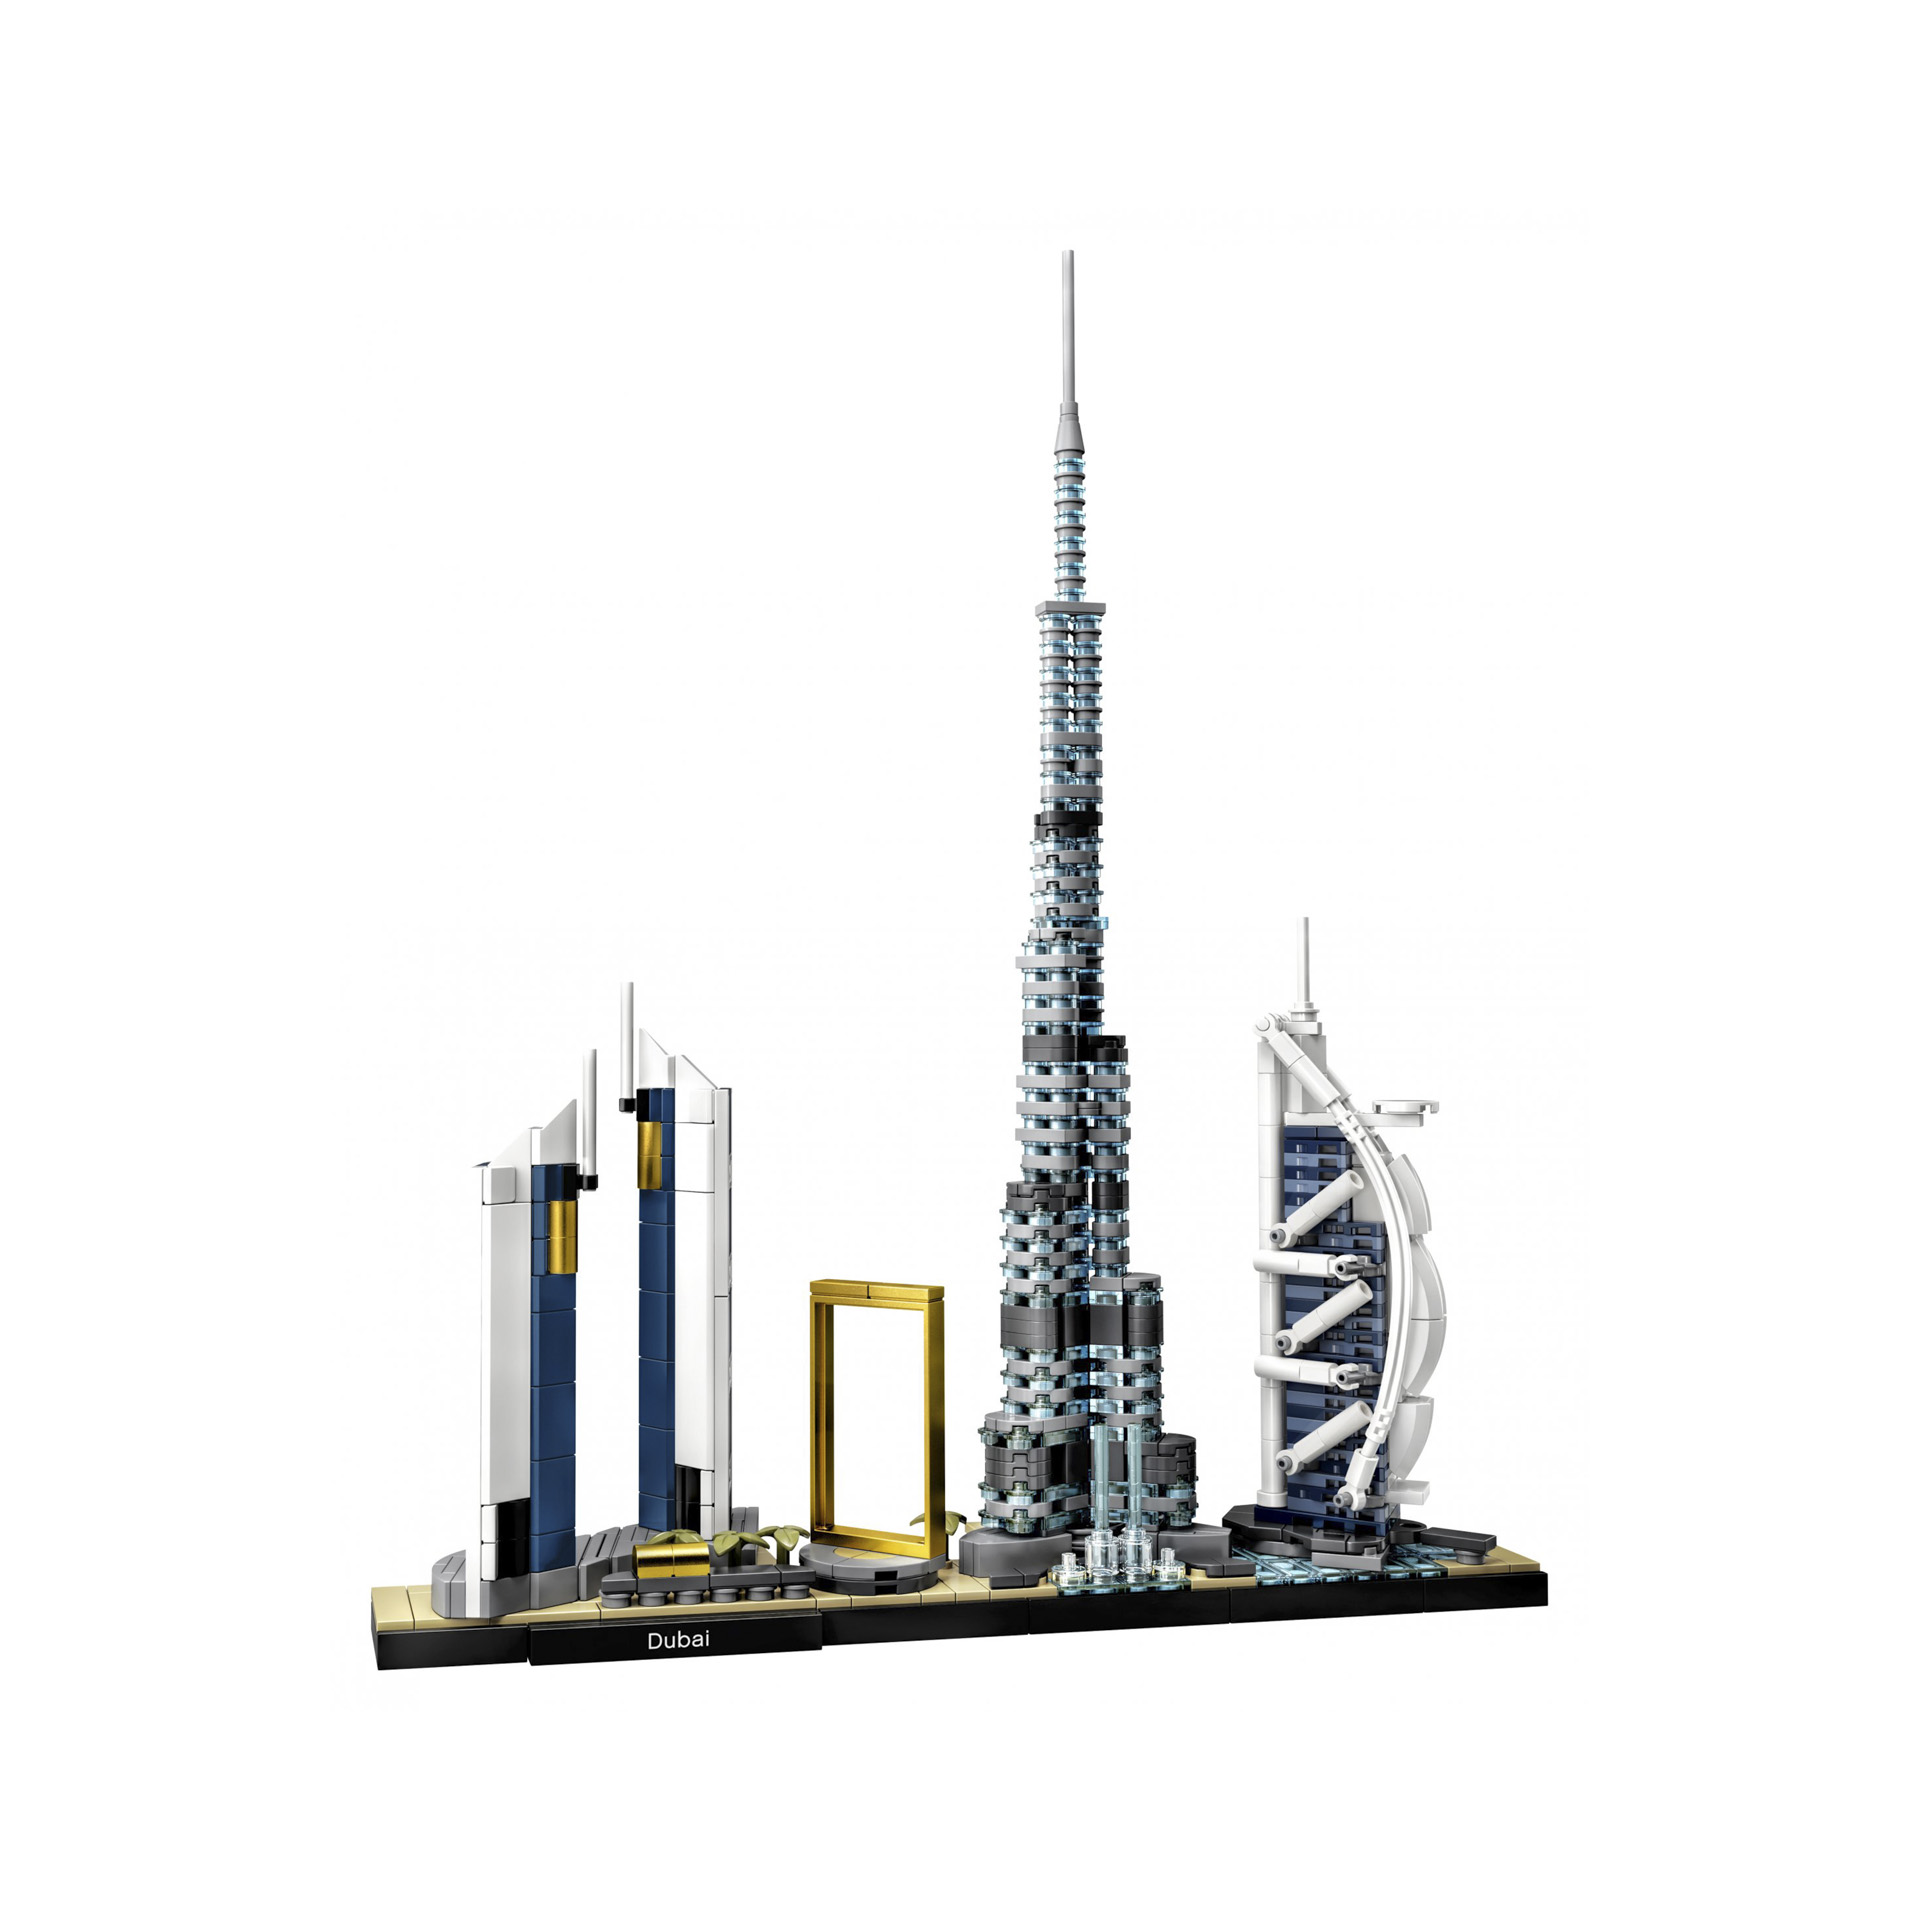 Dubai 21052, , large